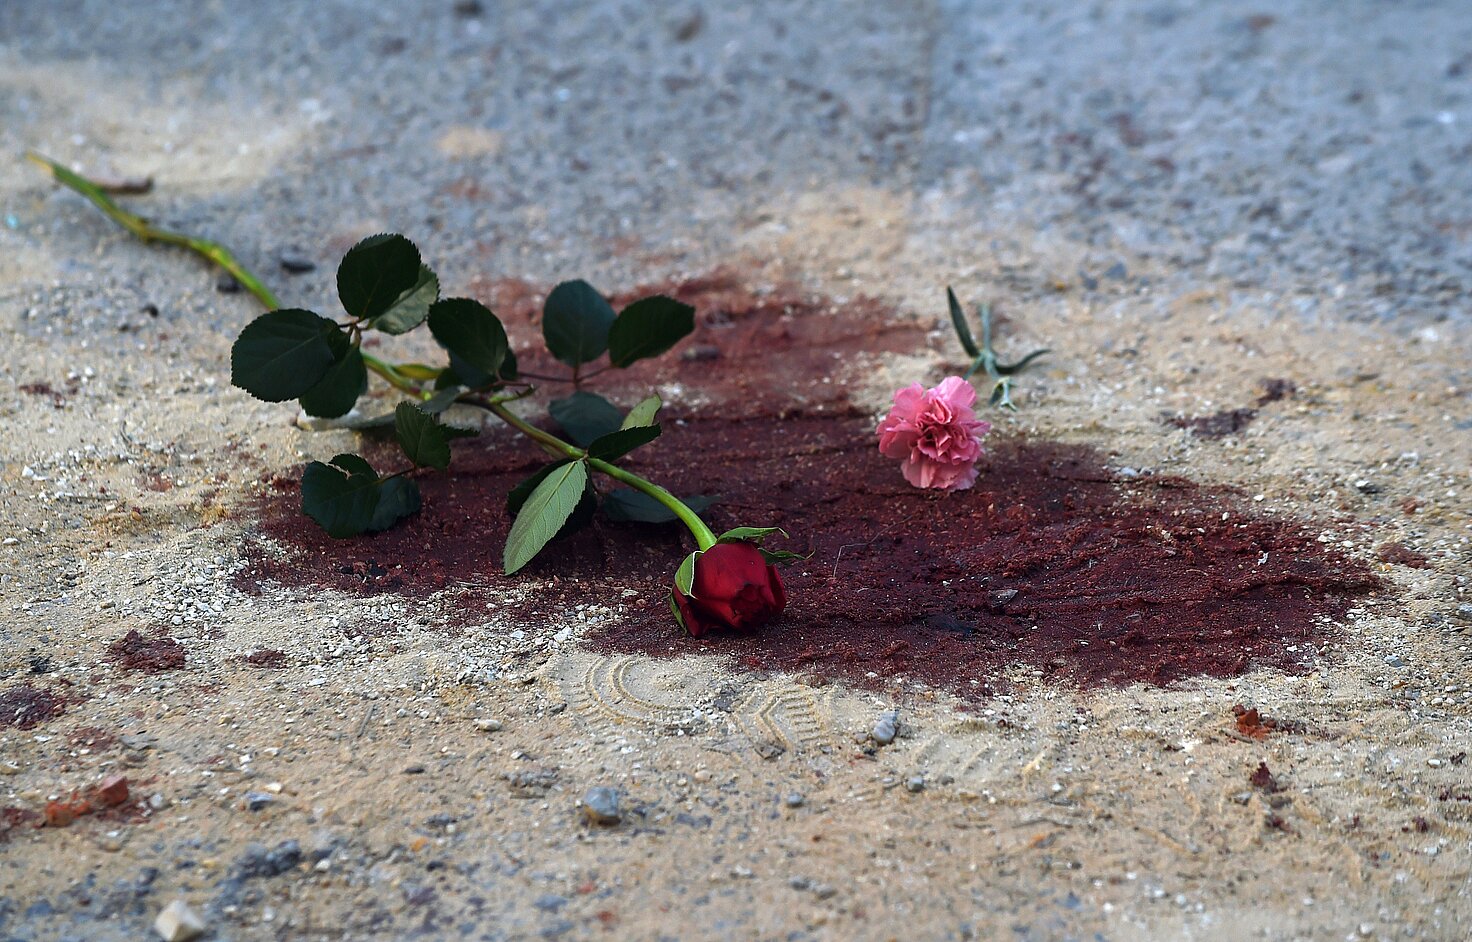 Sangre en el suelo tras el atentado mortal contra turistas en el Museo del Bardo, Túnez, marzo de 2015. © FADEL SENNA/AFP/Getty Images